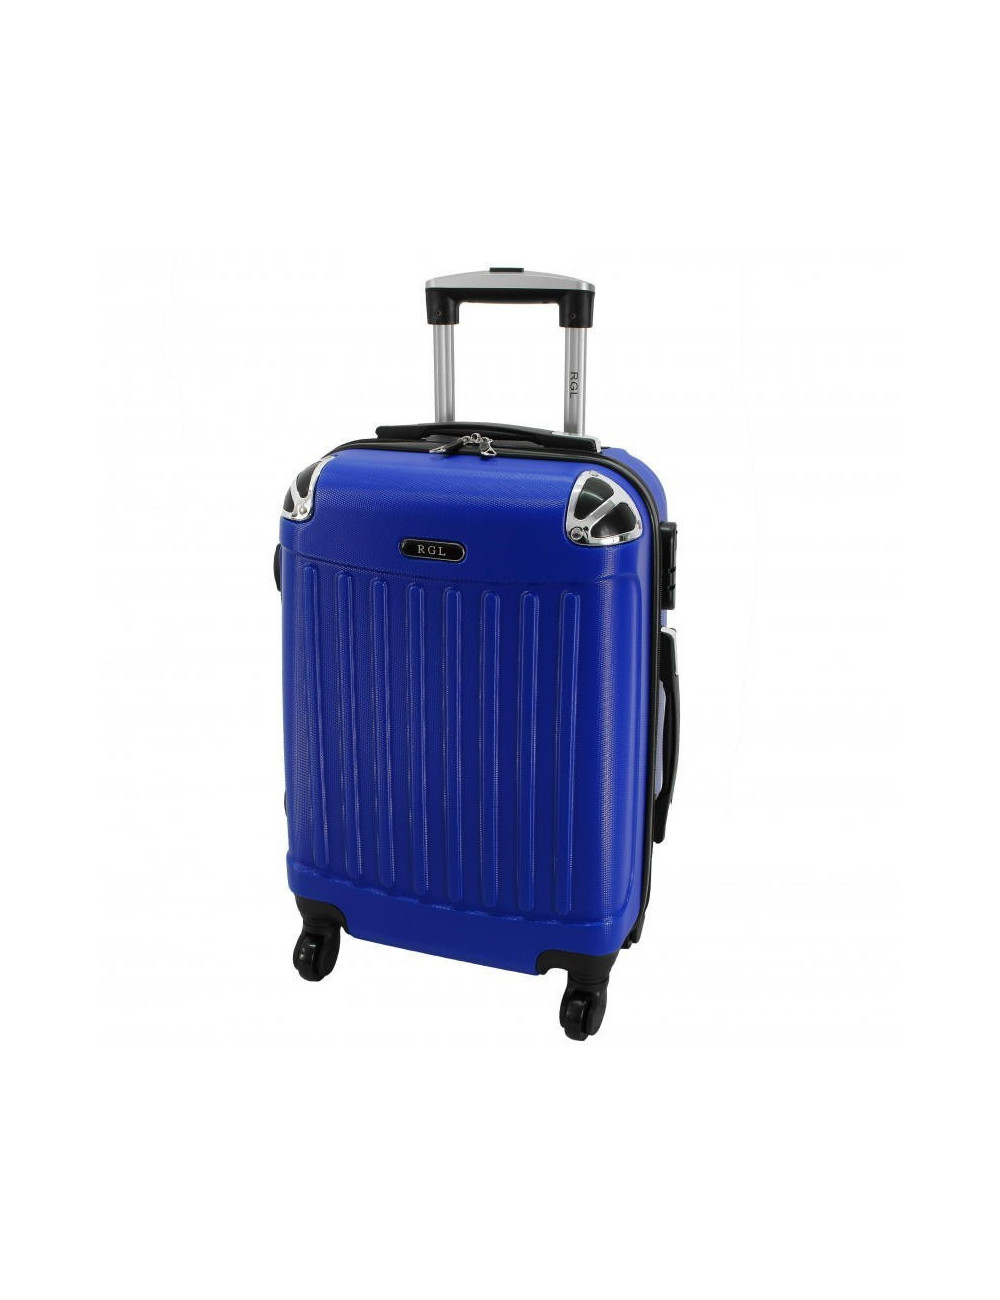 Mała walizka podróżna 735 L - Niebieska